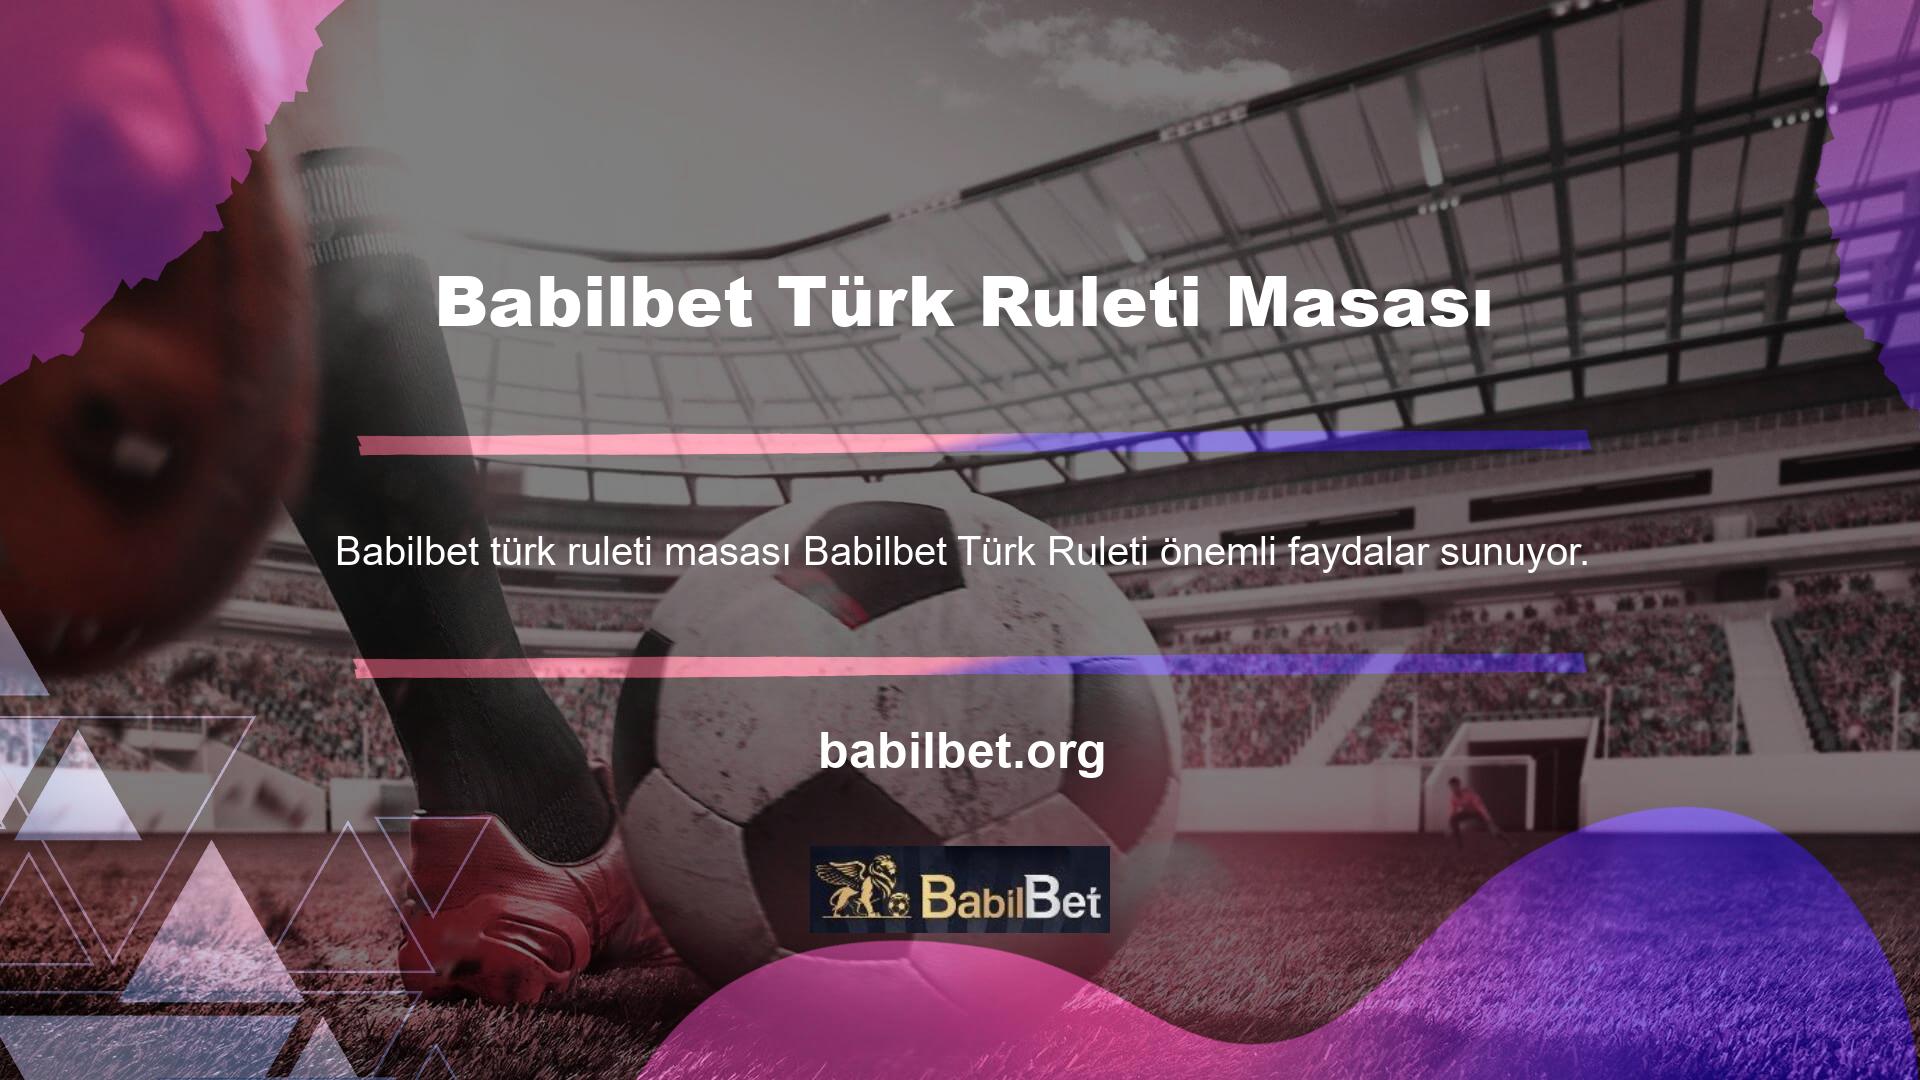 Türk rulet sitesi ülkemizde en popüler ve yaygın olarak kullanılan çevrimiçi bahis platformlarından biridir